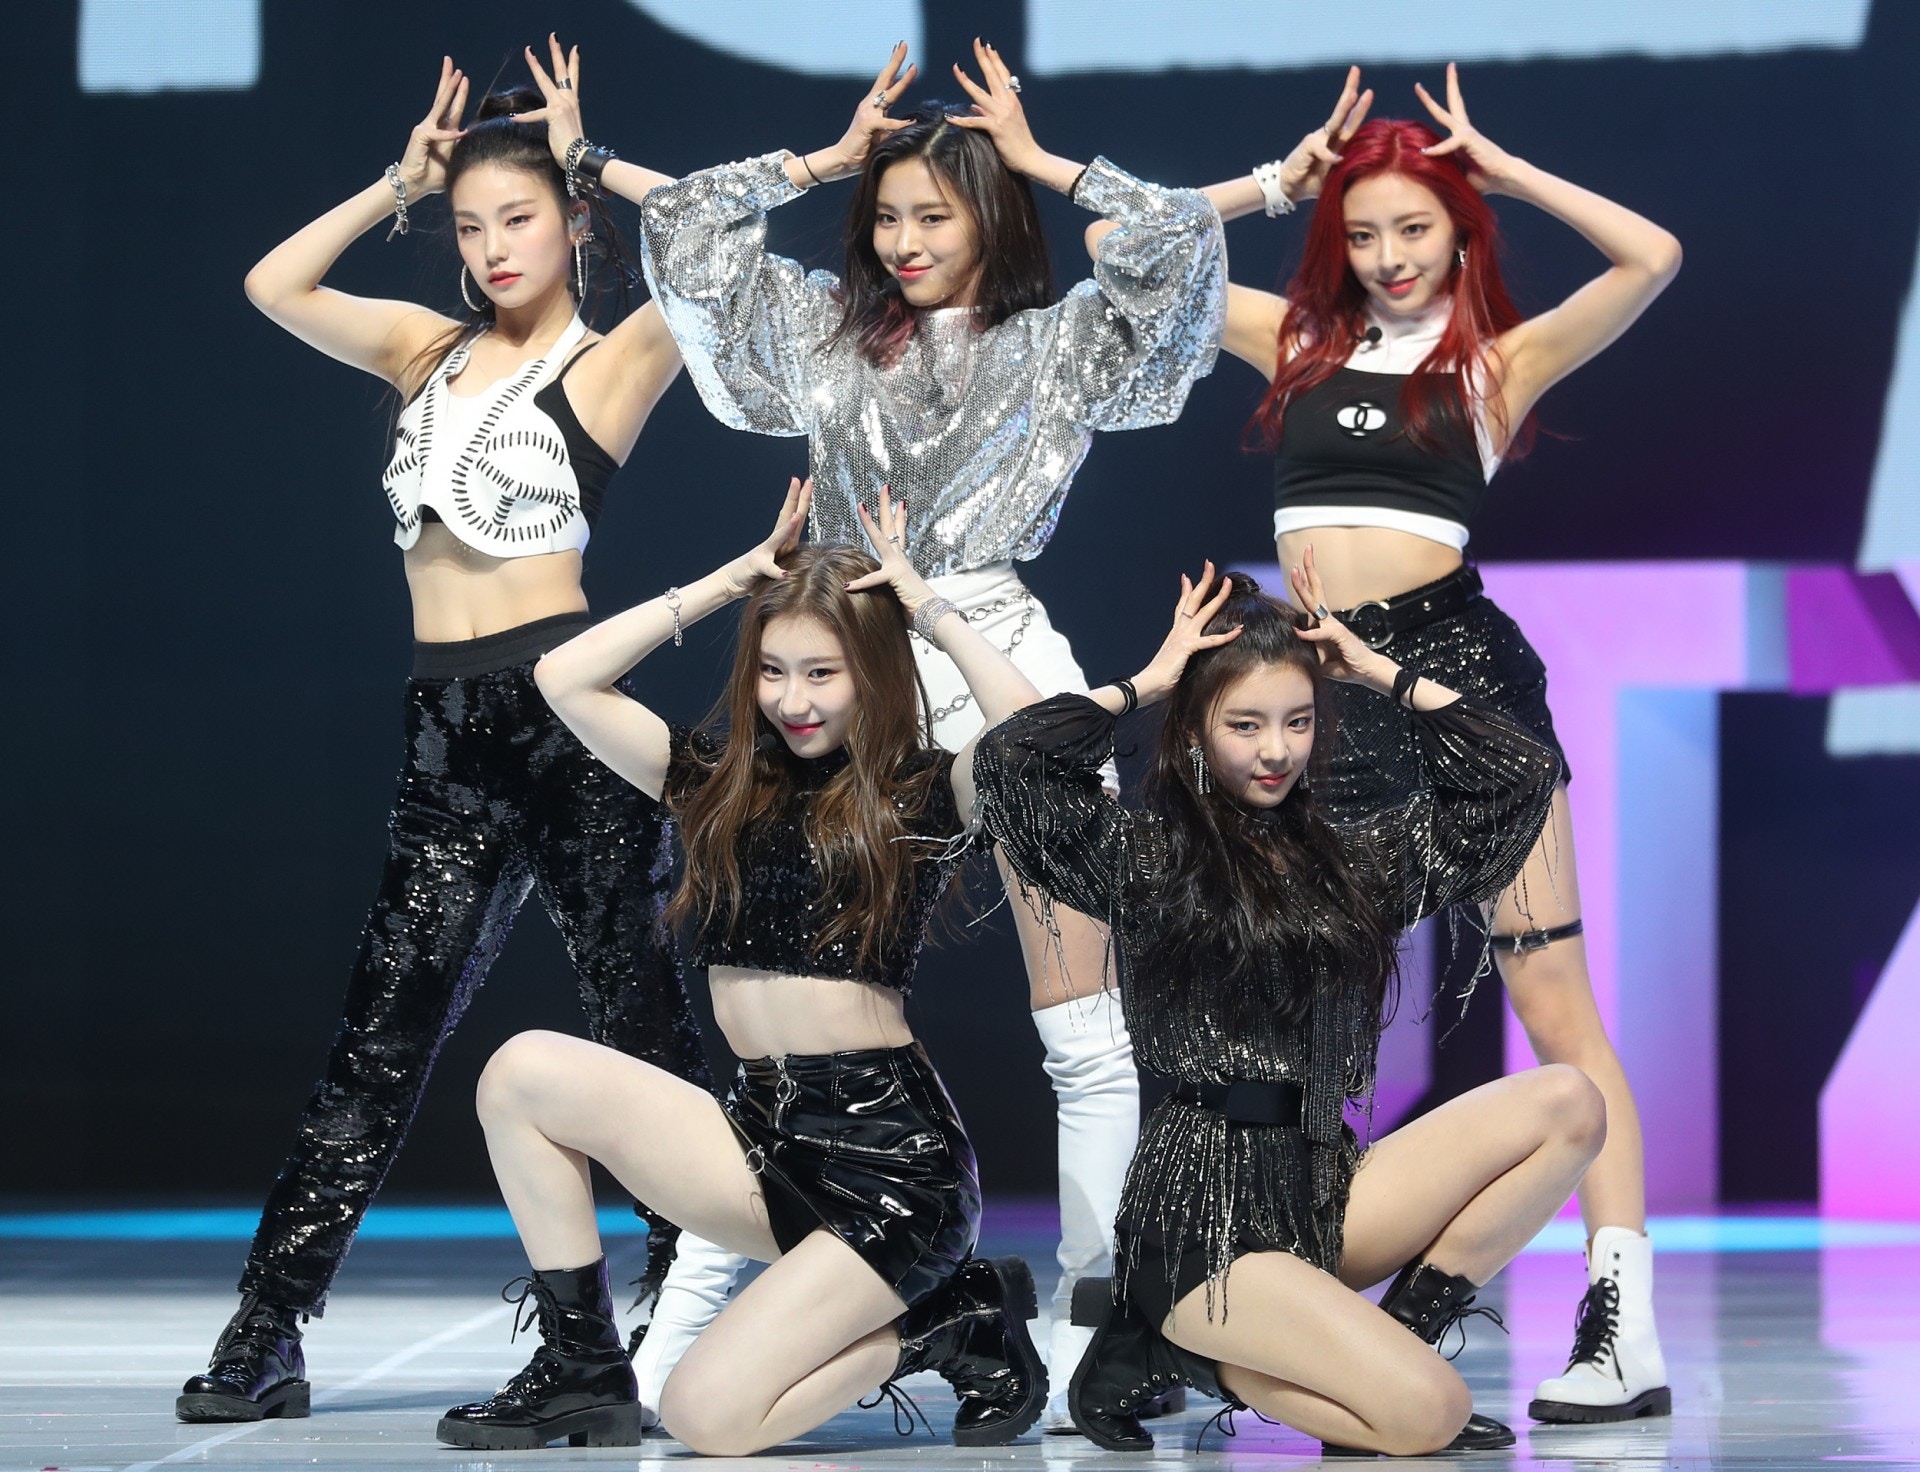 新團BLING BLING閃亮登場集合韓日成員目標做「全球K-pop女團」